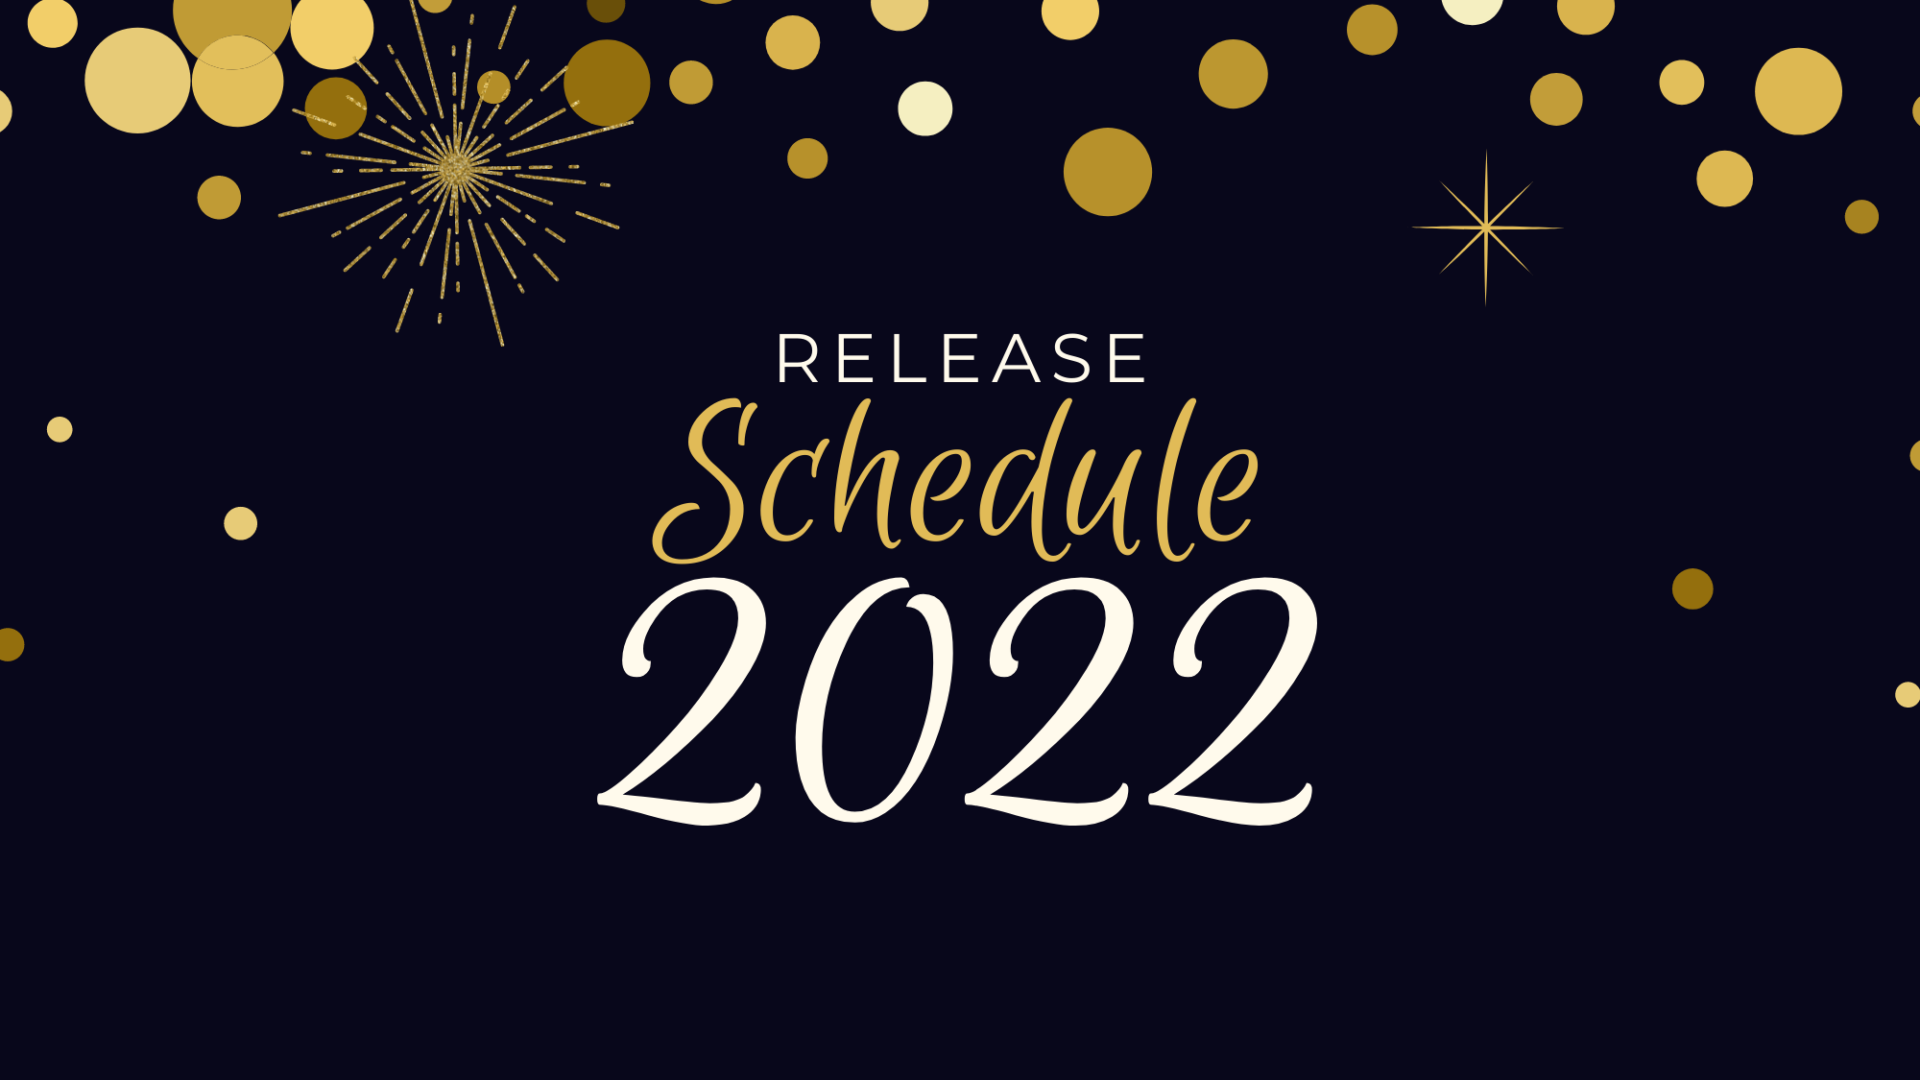 My 2022 Release Schedule